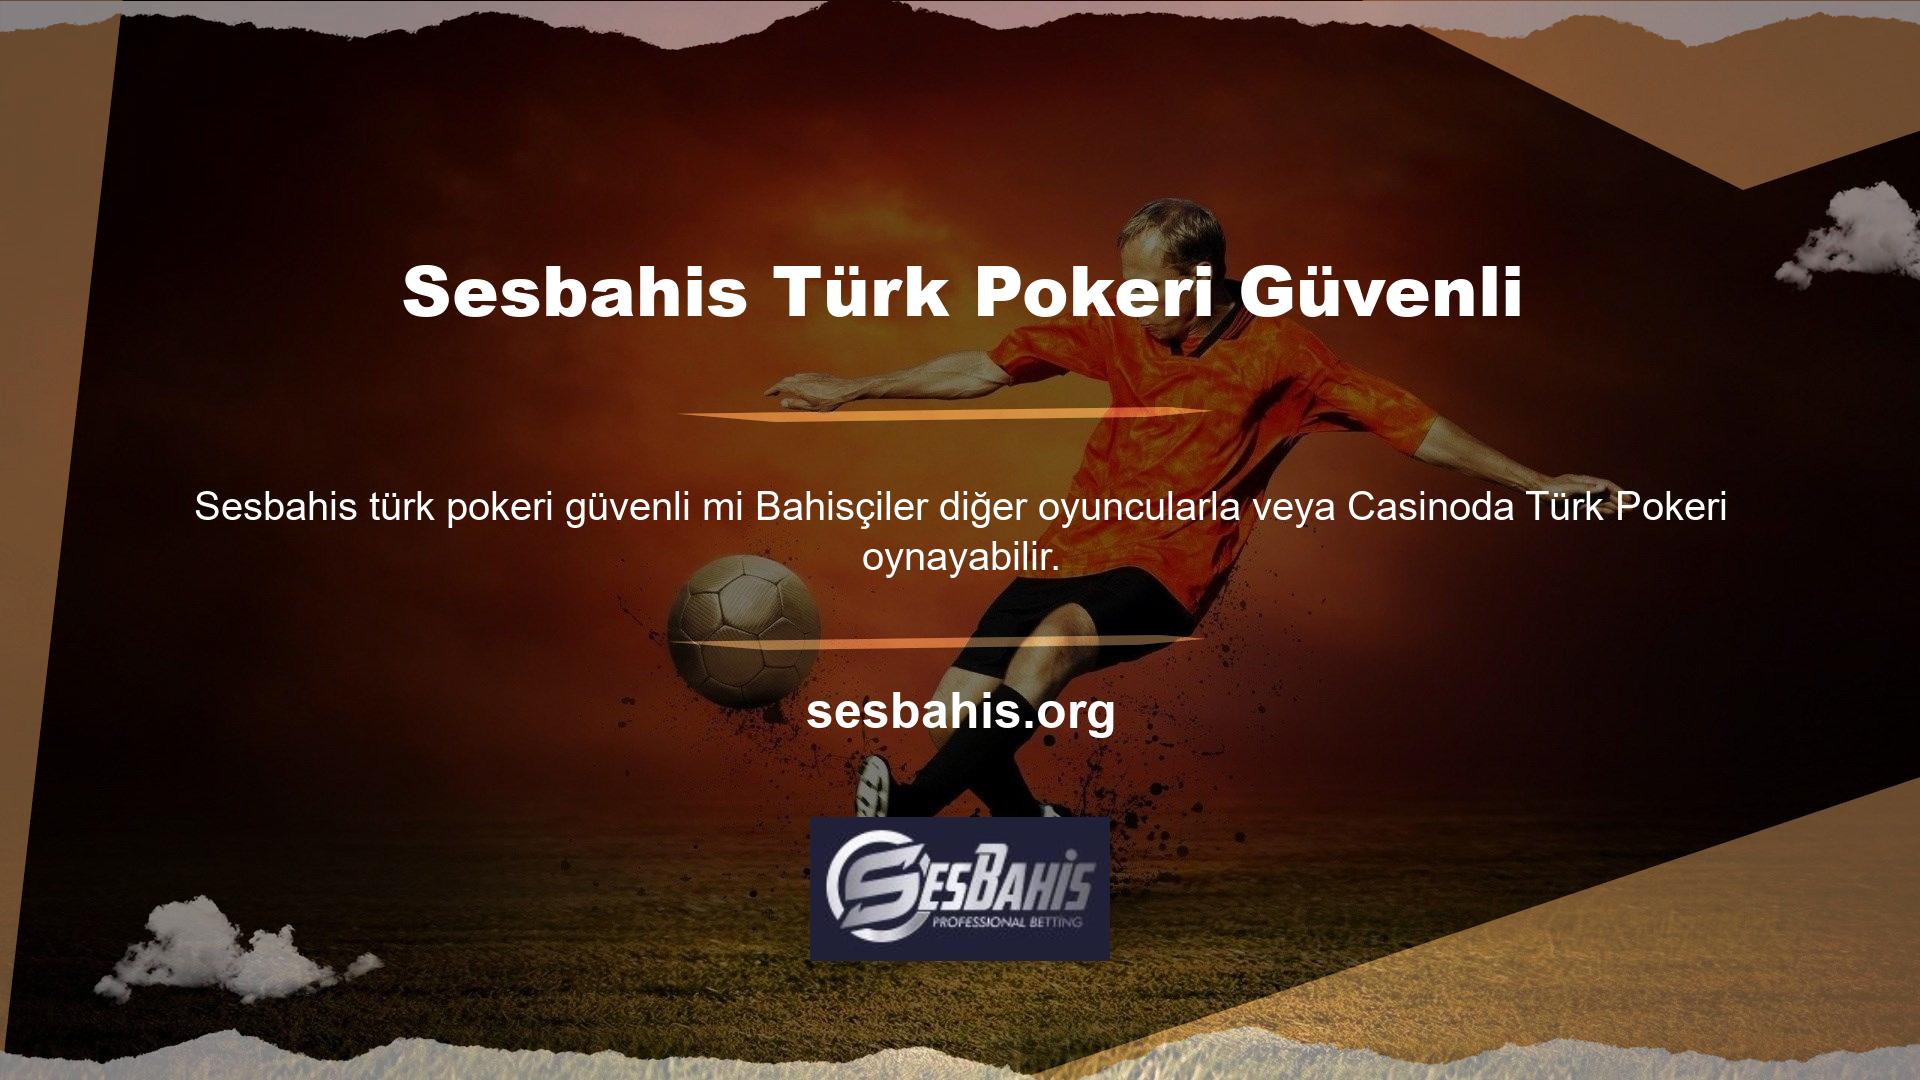 Türk pokerinin her iki varyantta da güvenli olduğu söylenebilir